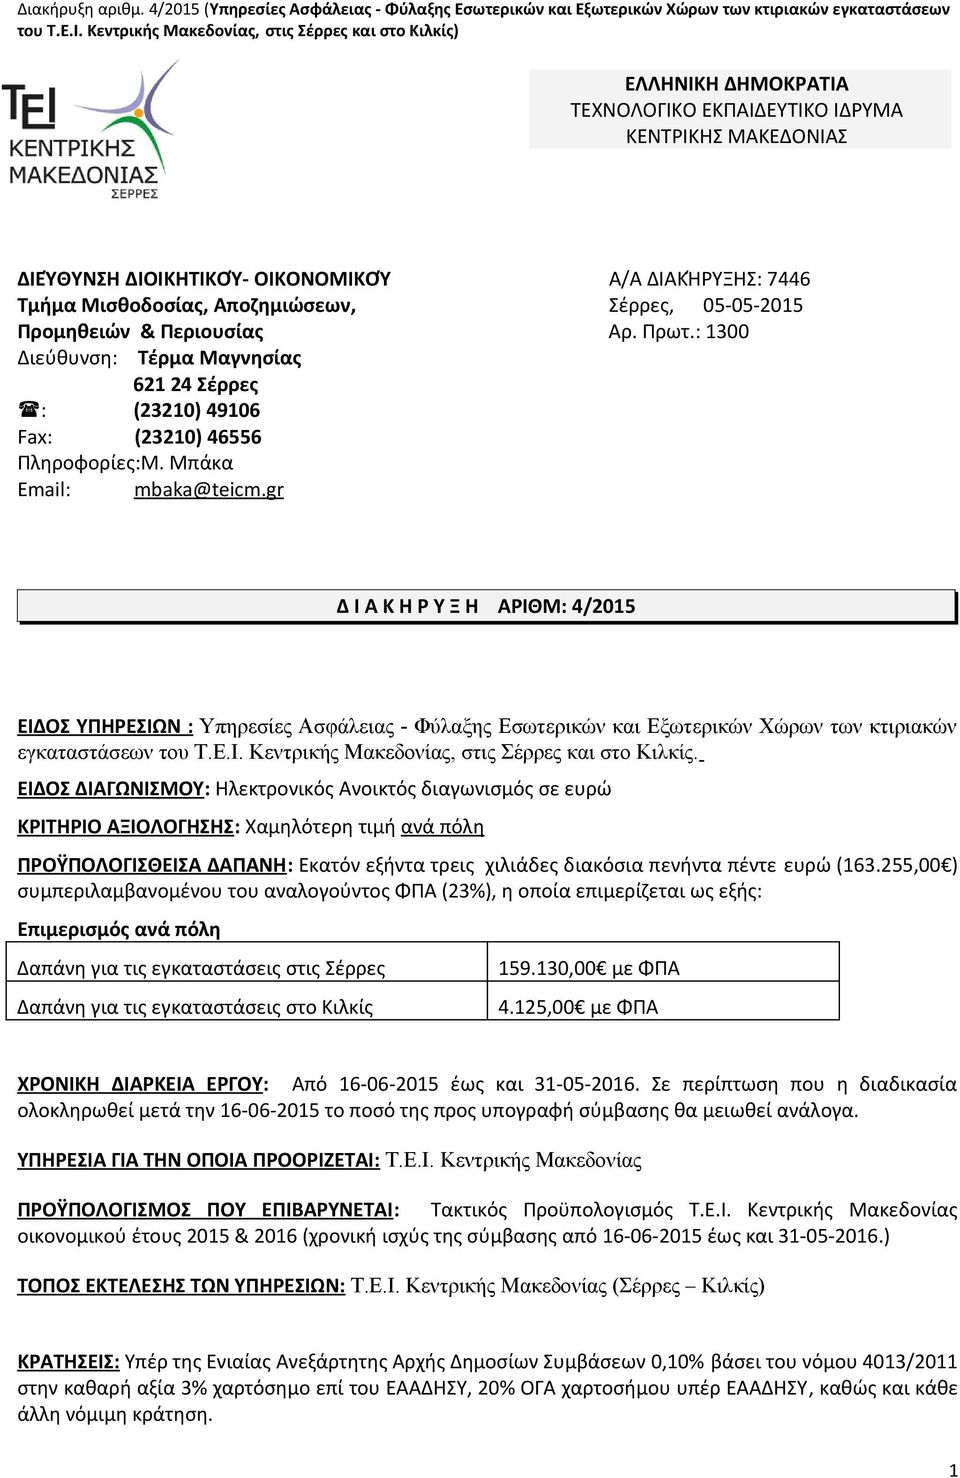 Αποζημιώσεων, Σέρρες, 05-05-2015 Προμηθειών & Περιουσίας Αρ. Πρωτ.: 1300 Διεύθυνση: Τέρμα Μαγνησίας 621 24 Σέρρες : (23210) 49106 Fax: (23210) 46556 Πληροφορίες:Μ. Μπάκα Email: mbaka @ teicm.